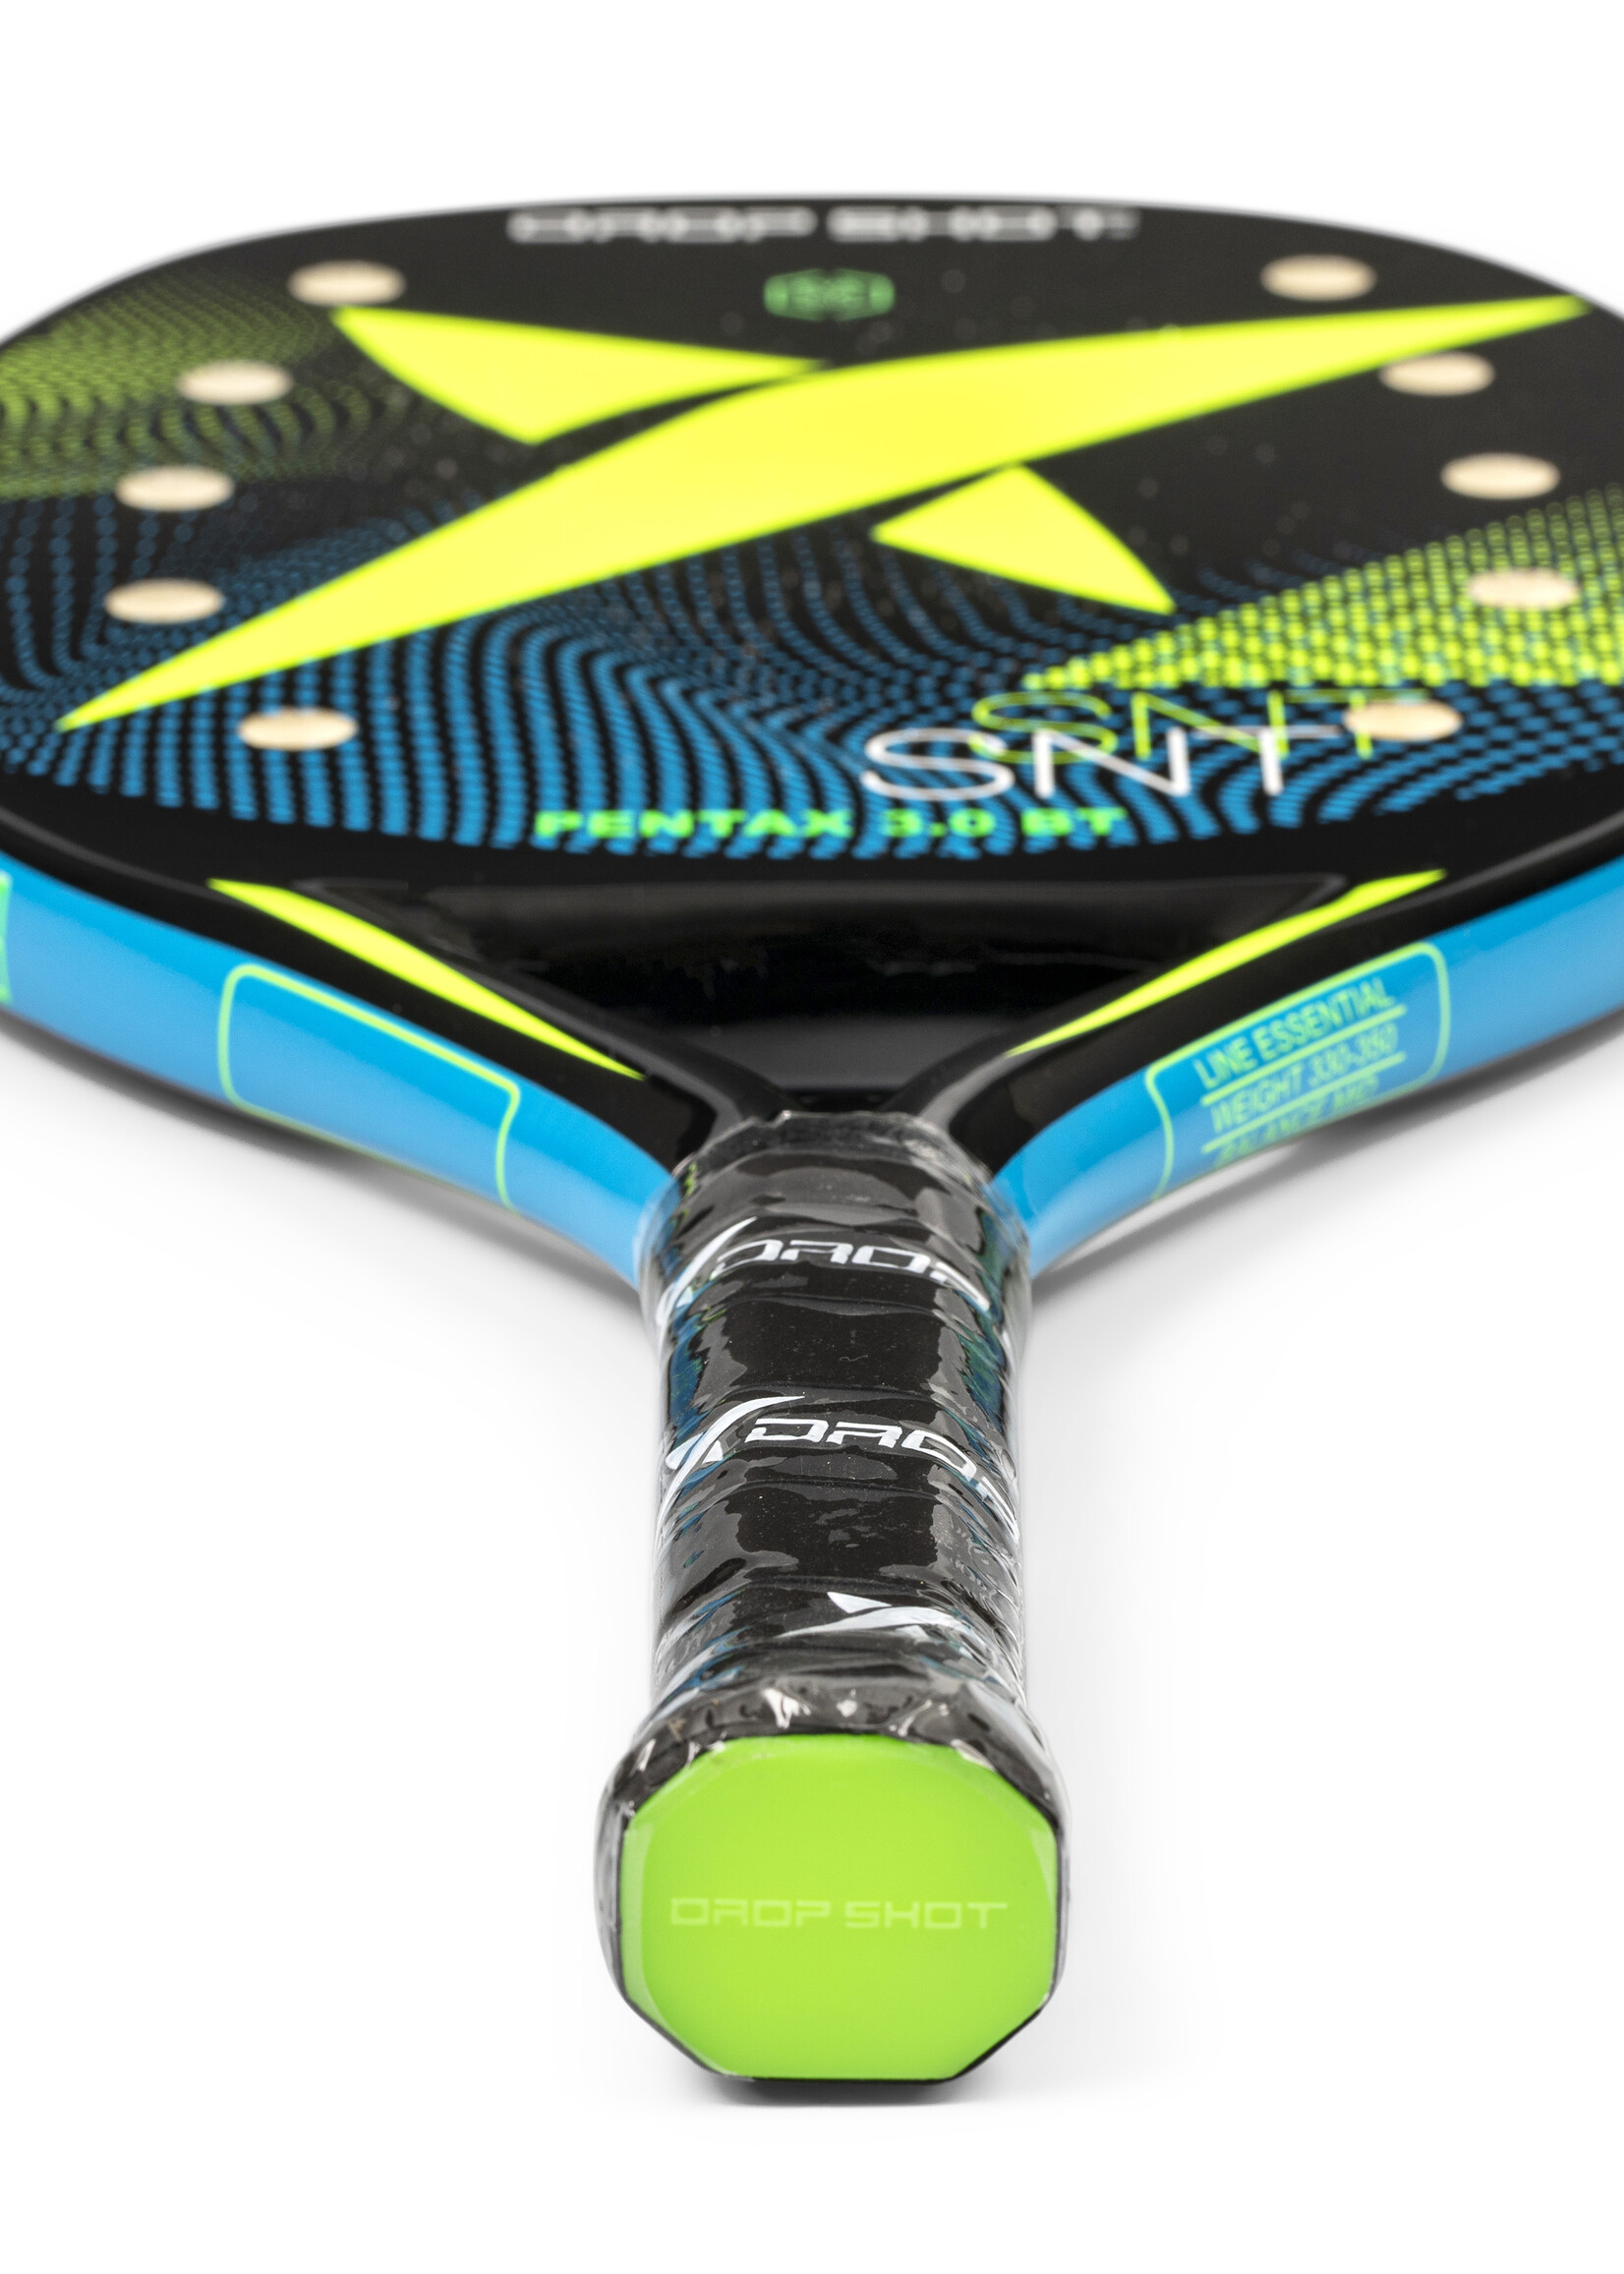 Drop Shot Pala Pentax 3.0 Beach Tennis Racquet